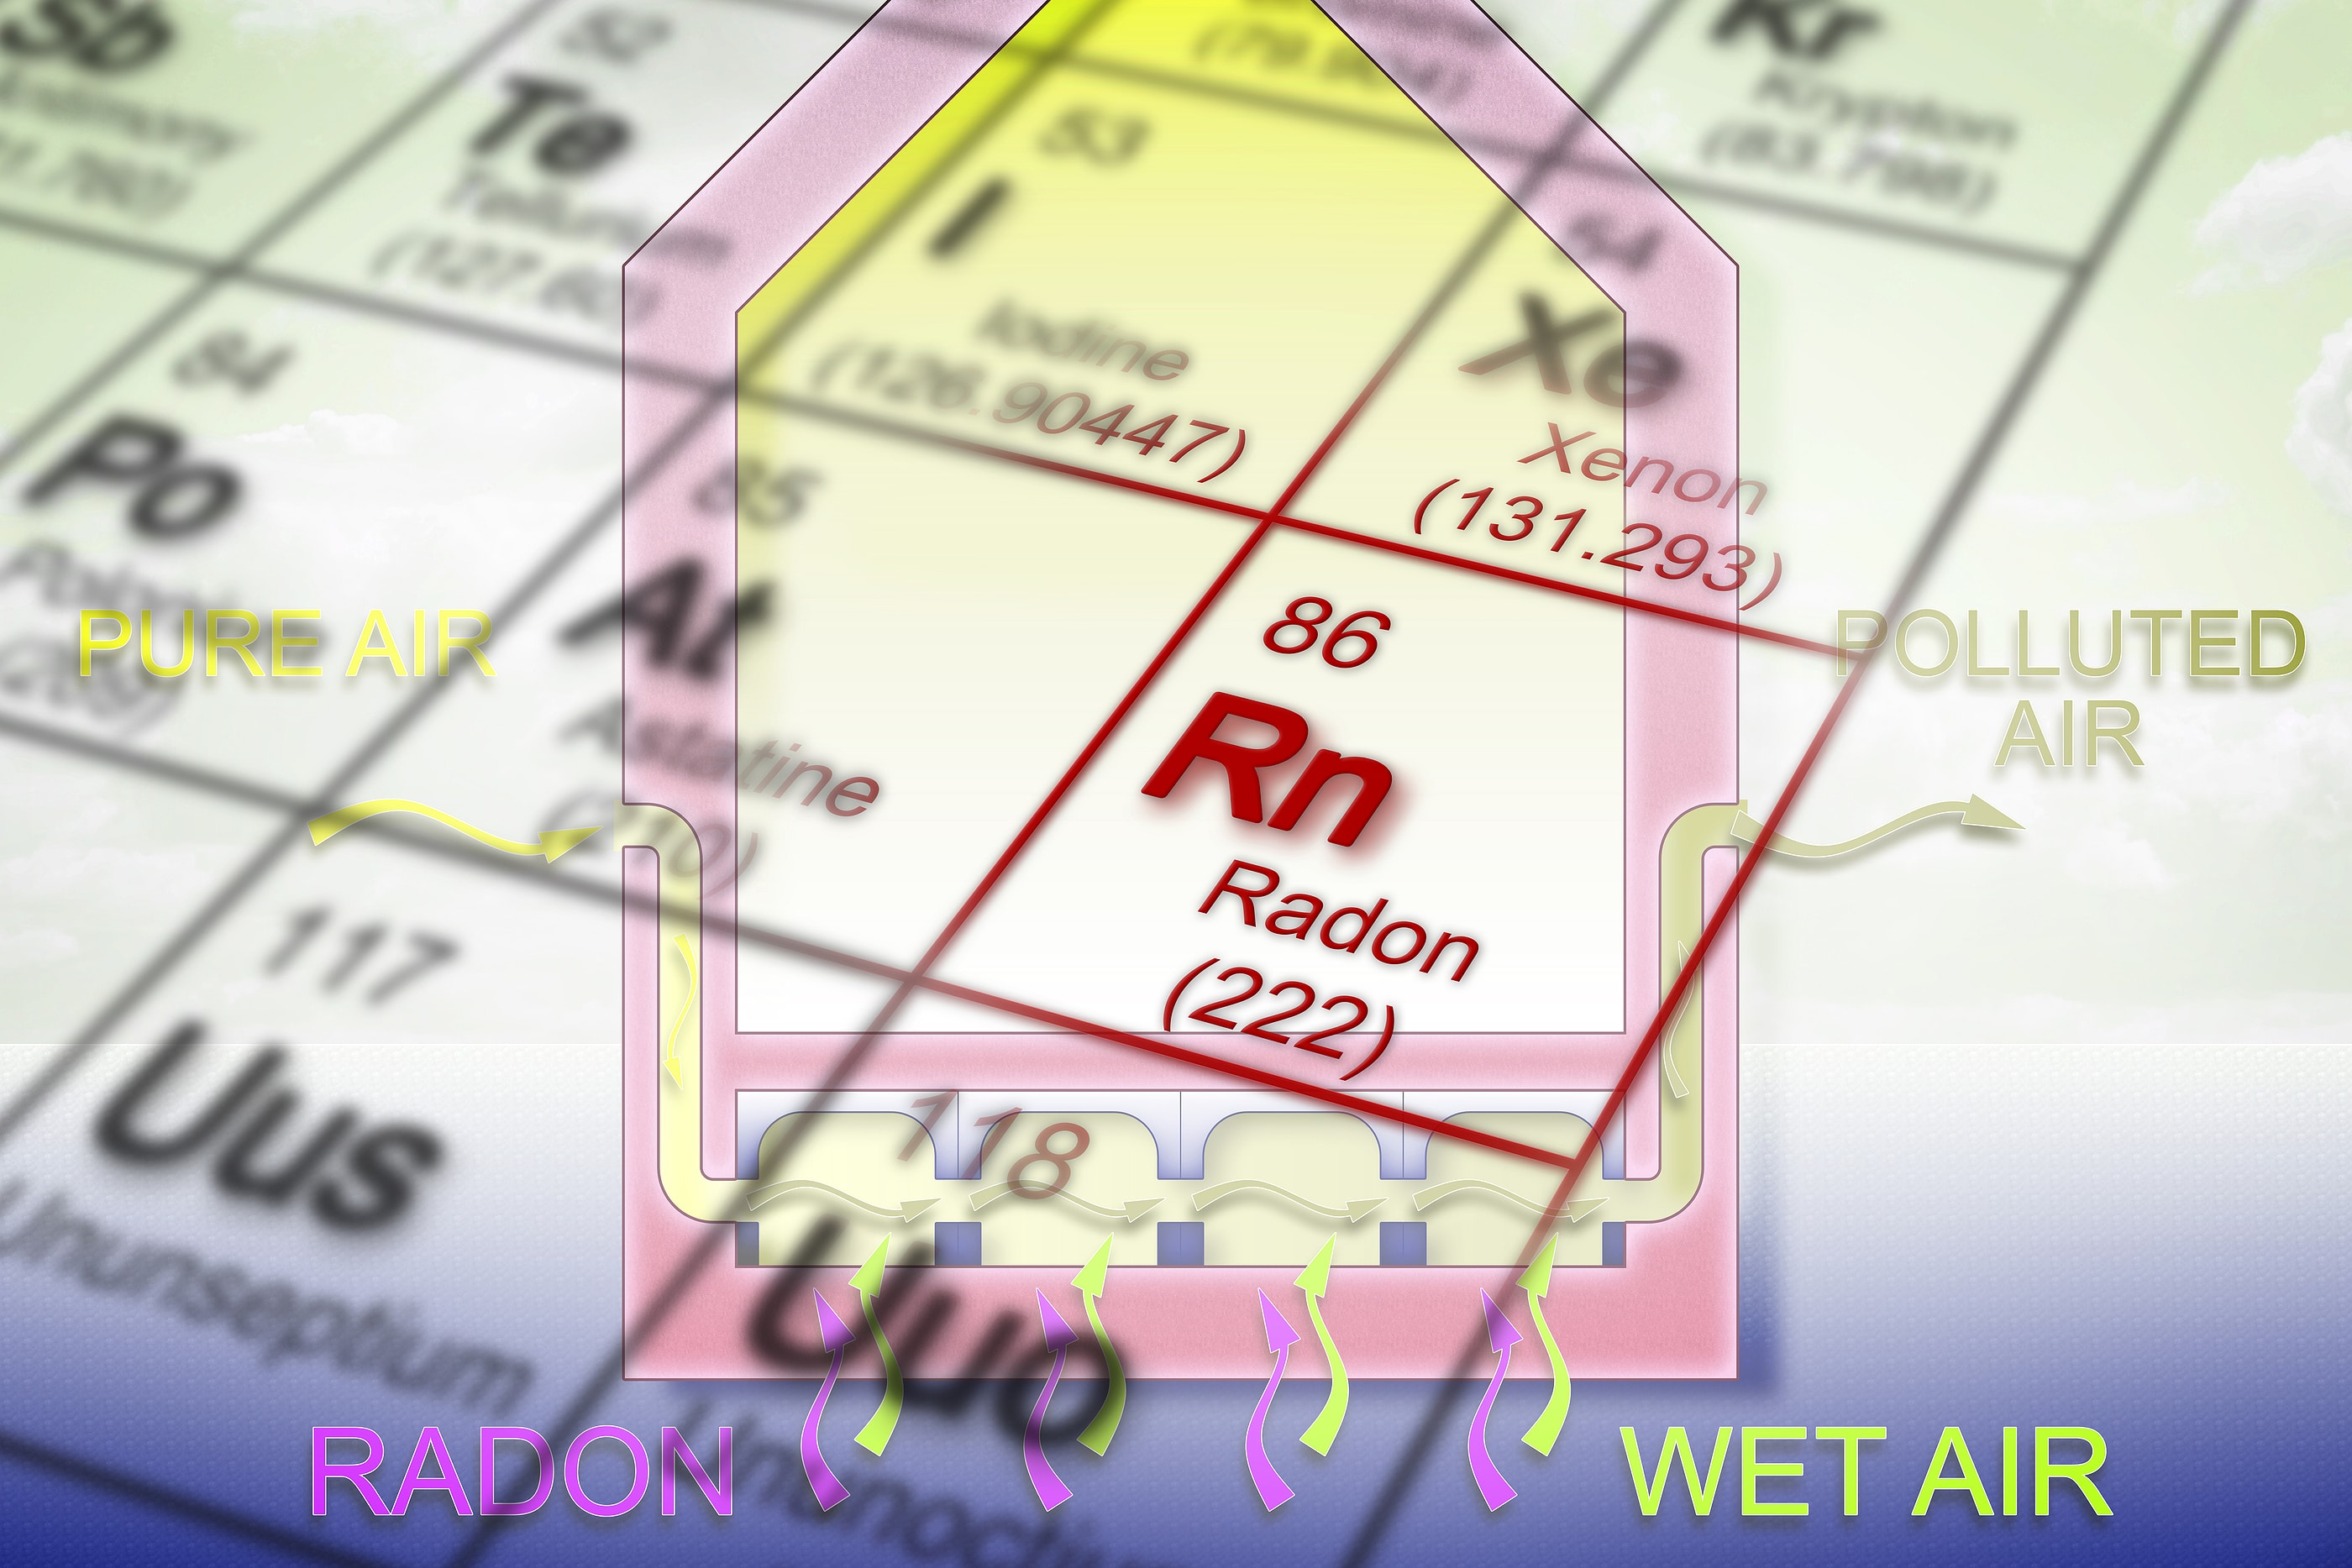 3 Myths about Radon